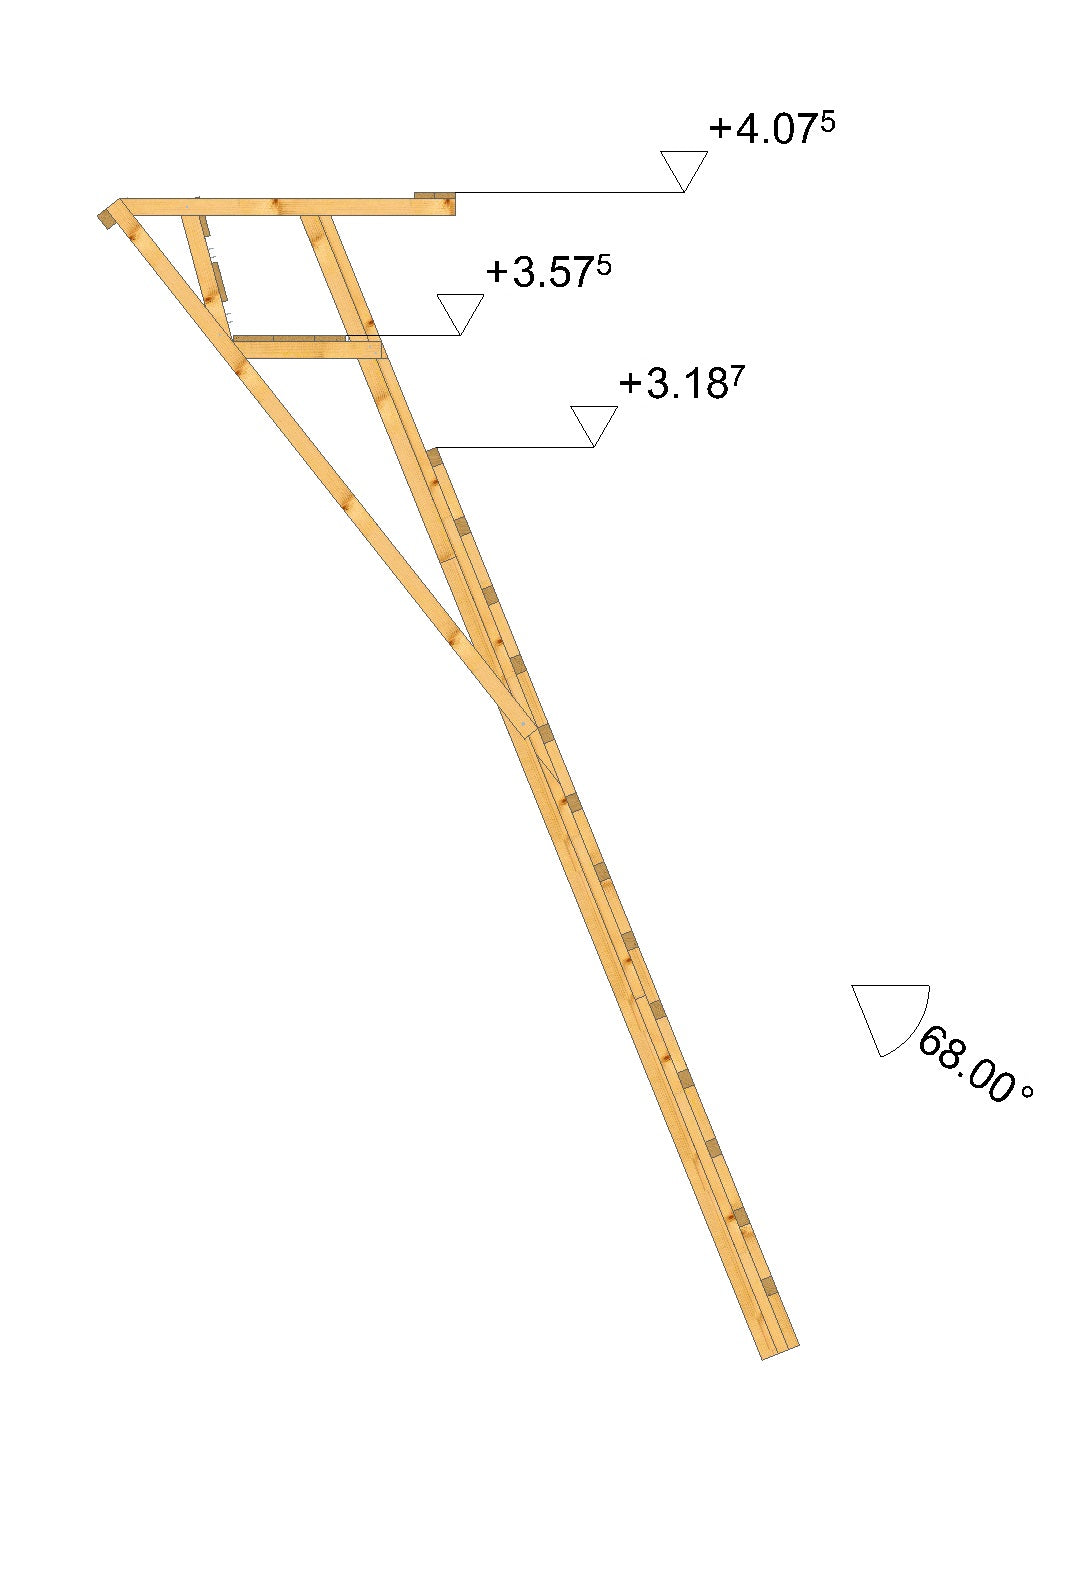 Es handelt sich hier um Zeichnung der Ansitzleiter / Drückjagdleiter groß, ohne Dach, Höhe 4,06 m für die Jagd.